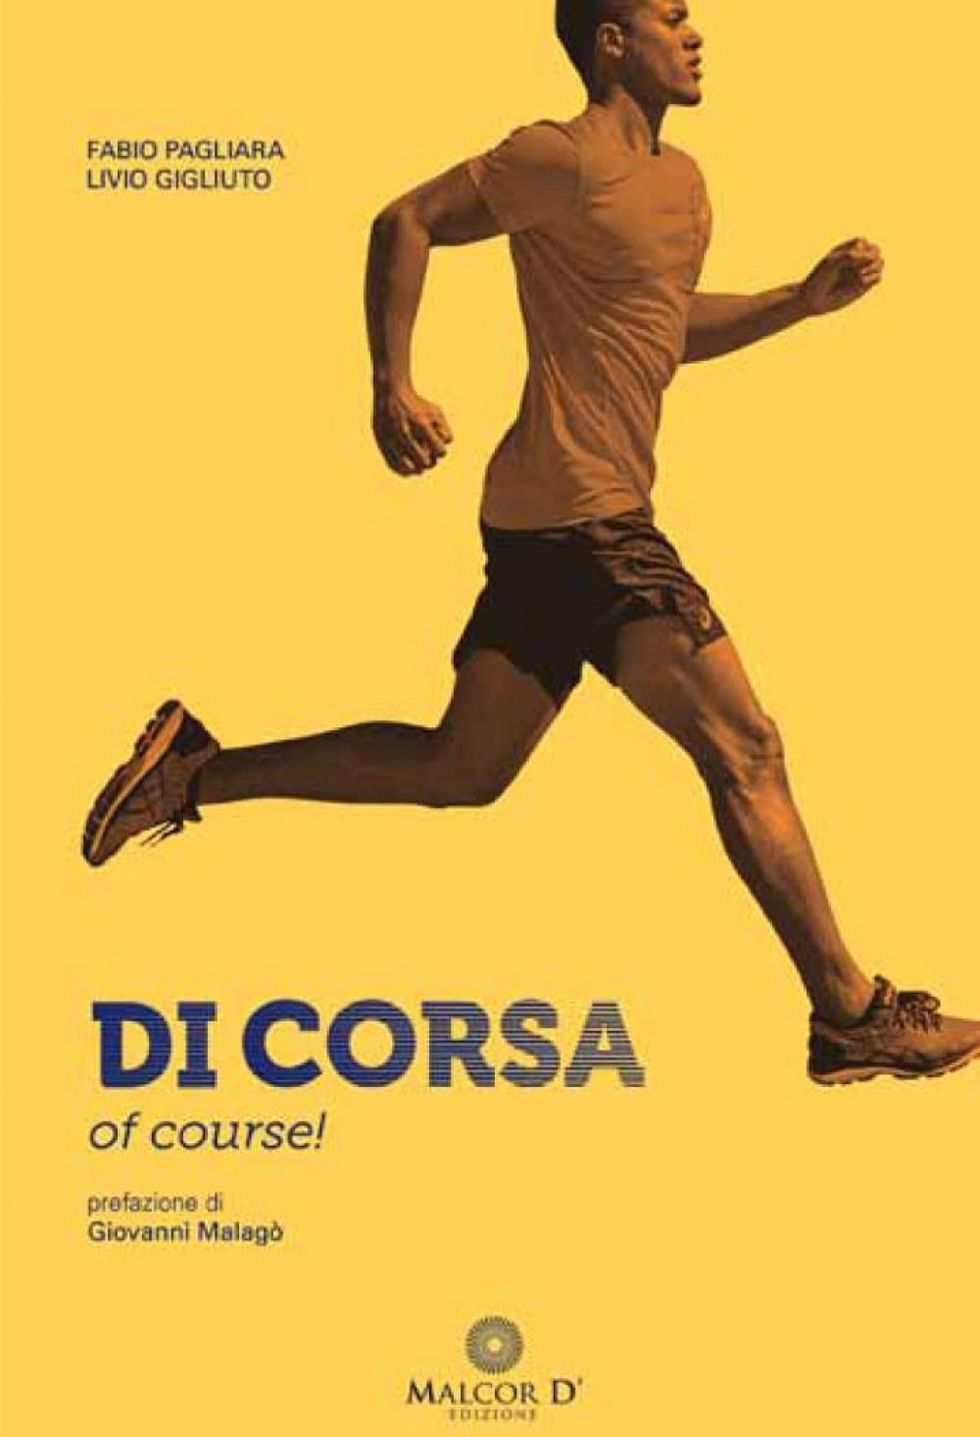 La copertina di “Di corsa, of course!” di  Fabio Pagliara e Livio Gigliuto